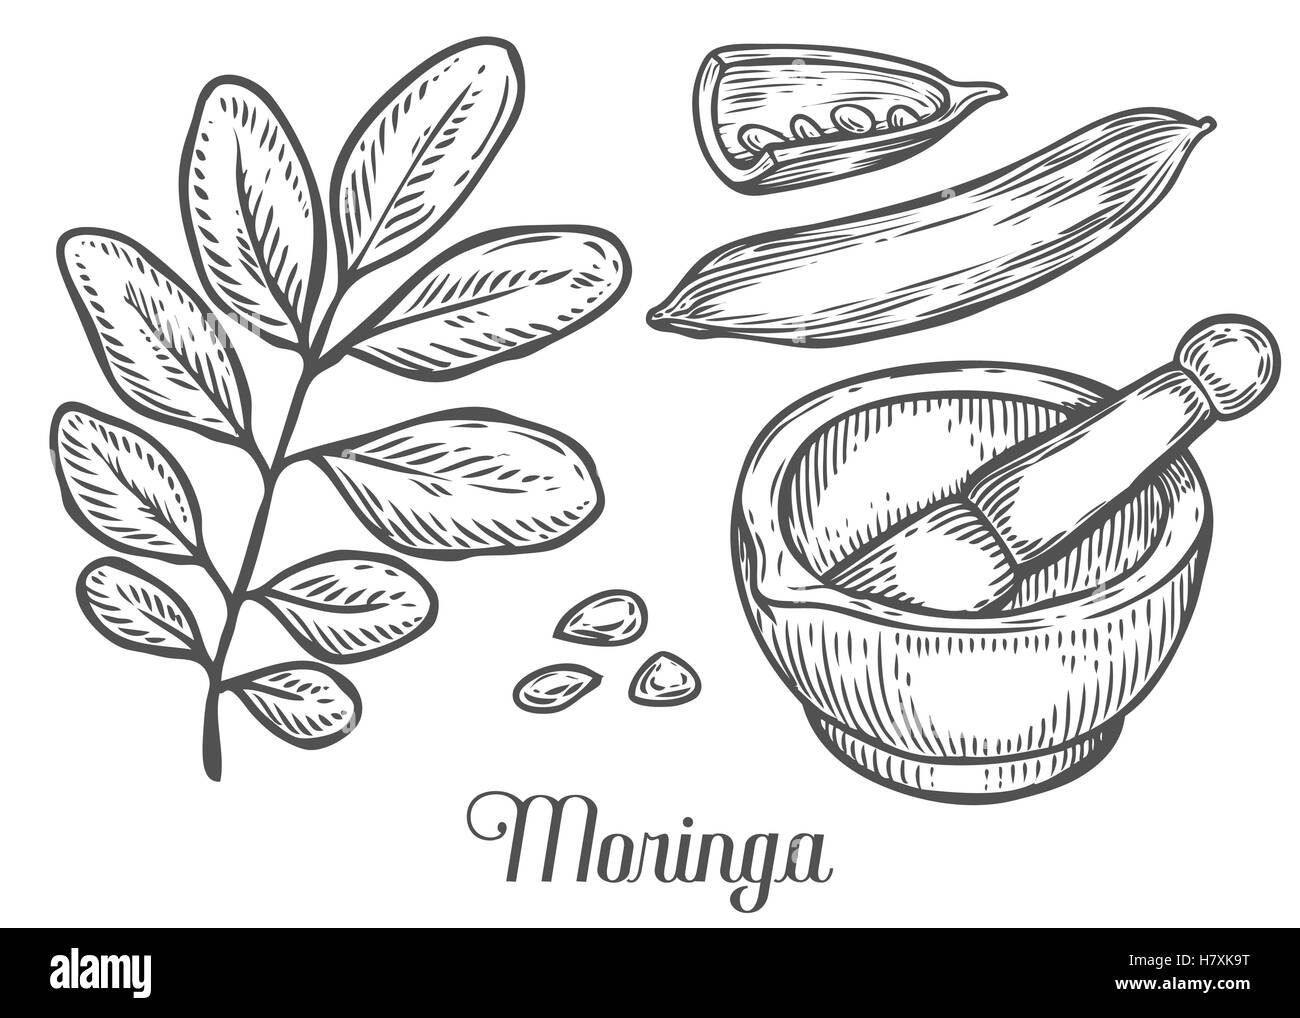 Moringa-Pflanze, Blatt, Samen mit Mörser und Stößel. Moringa Vintage skizzieren gravierte handgezeichnete Vektor-Illustration. Weiße staatlich Stock Vektor